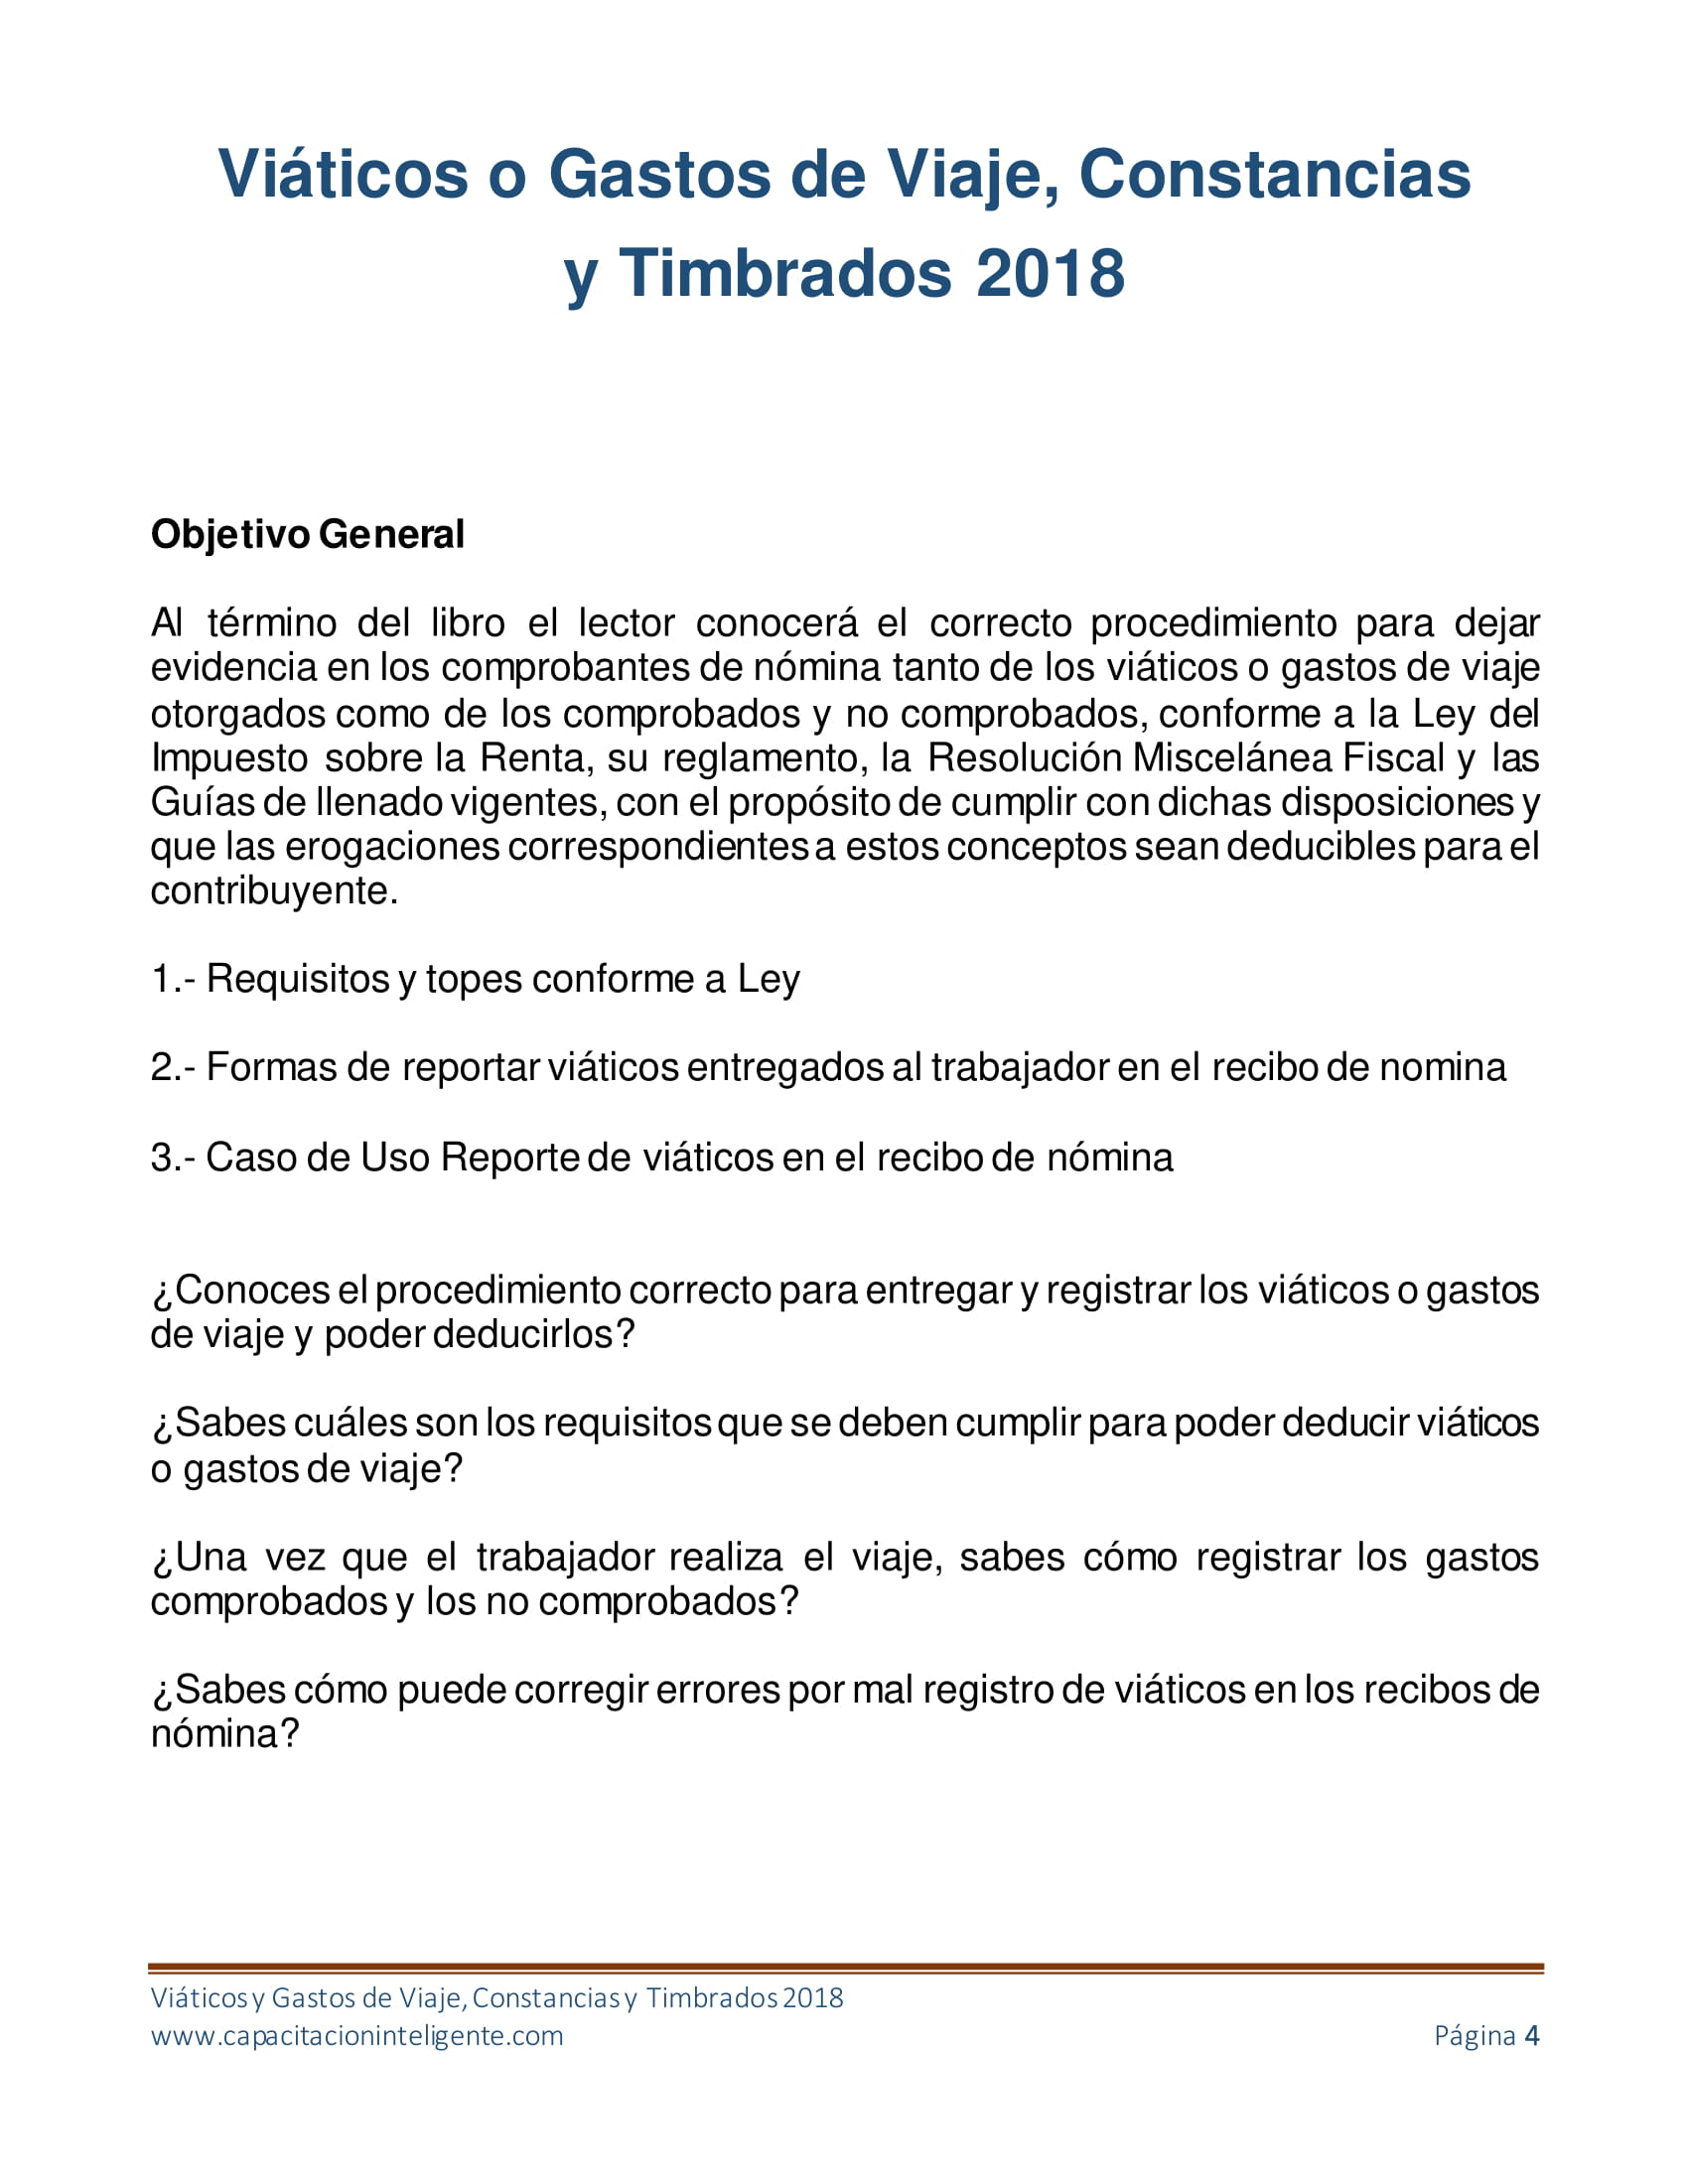 Libro_Viaticos_y_Gastos_de_Viaje_Constancias_y_Timbrados_2018-04